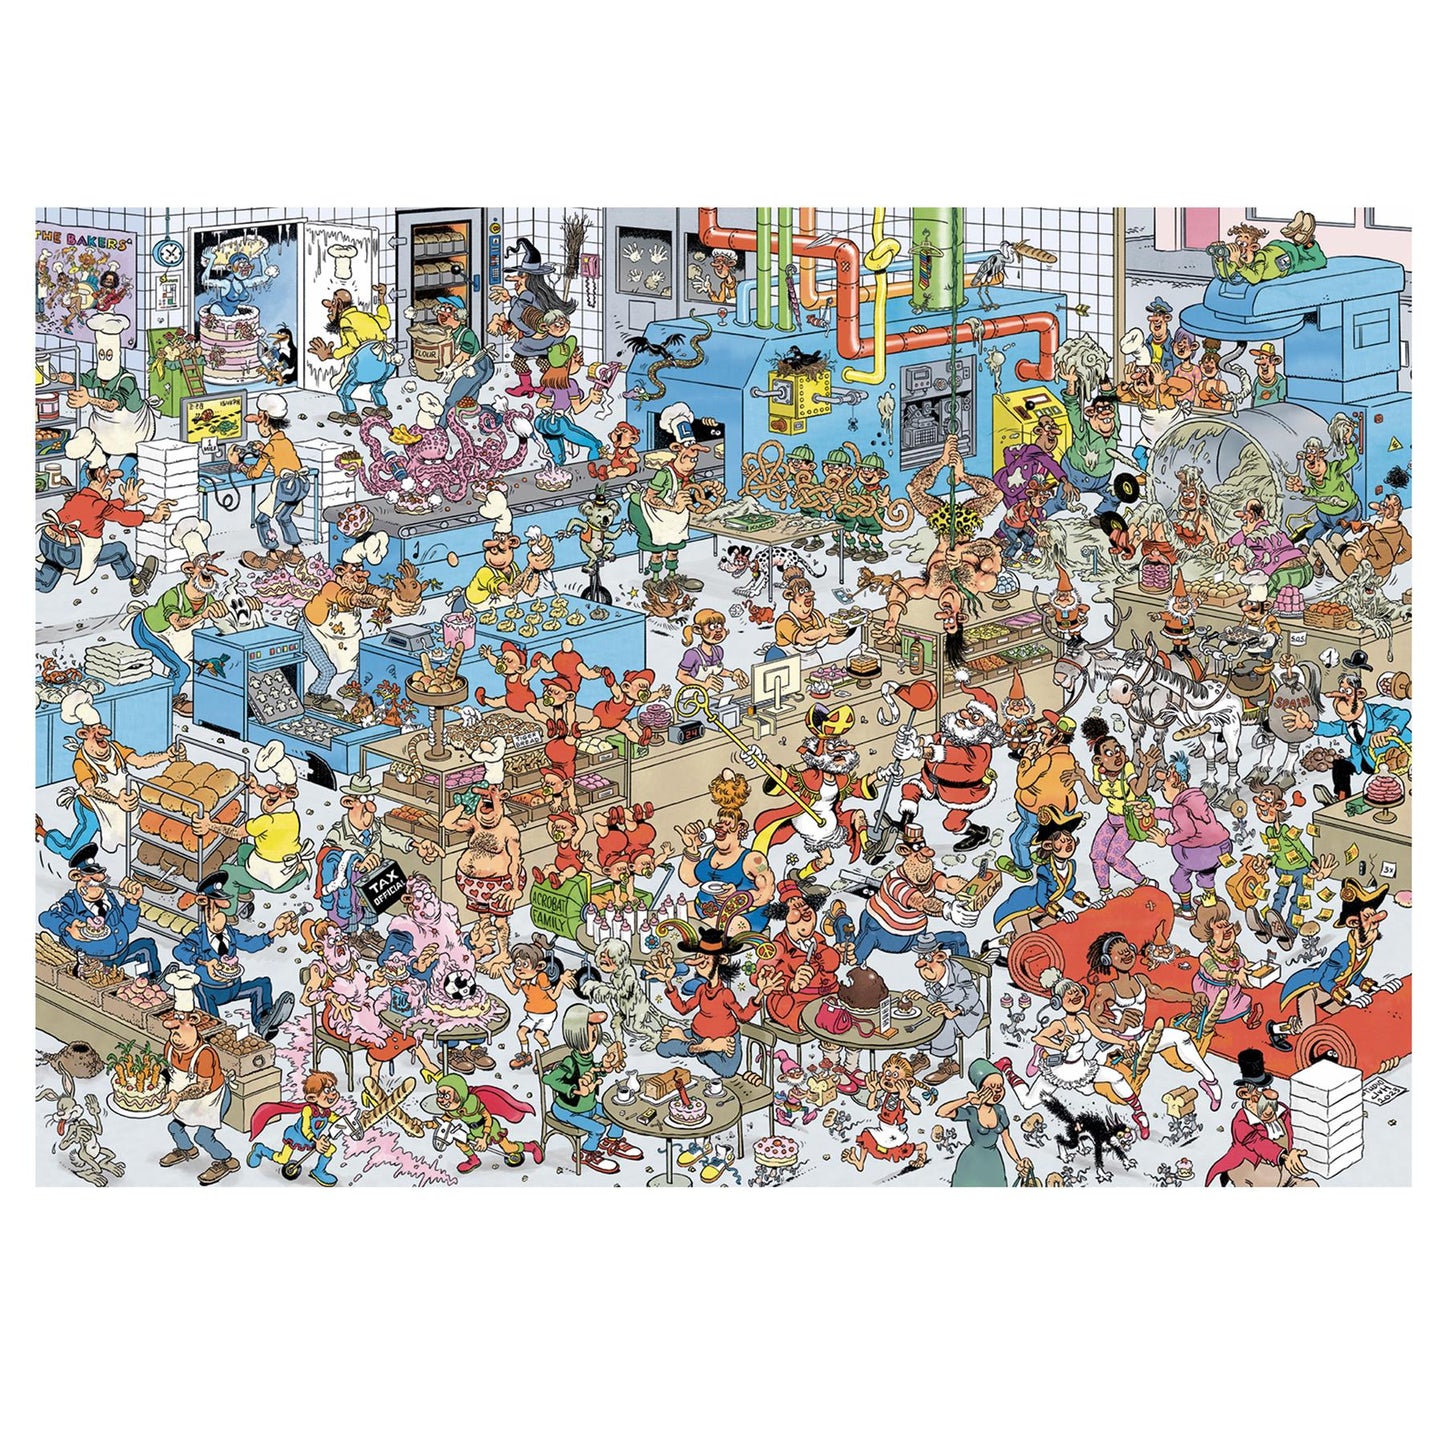 Jan Van Haasteren's The Bakery 1000 Piece Jigsaw Puzzle